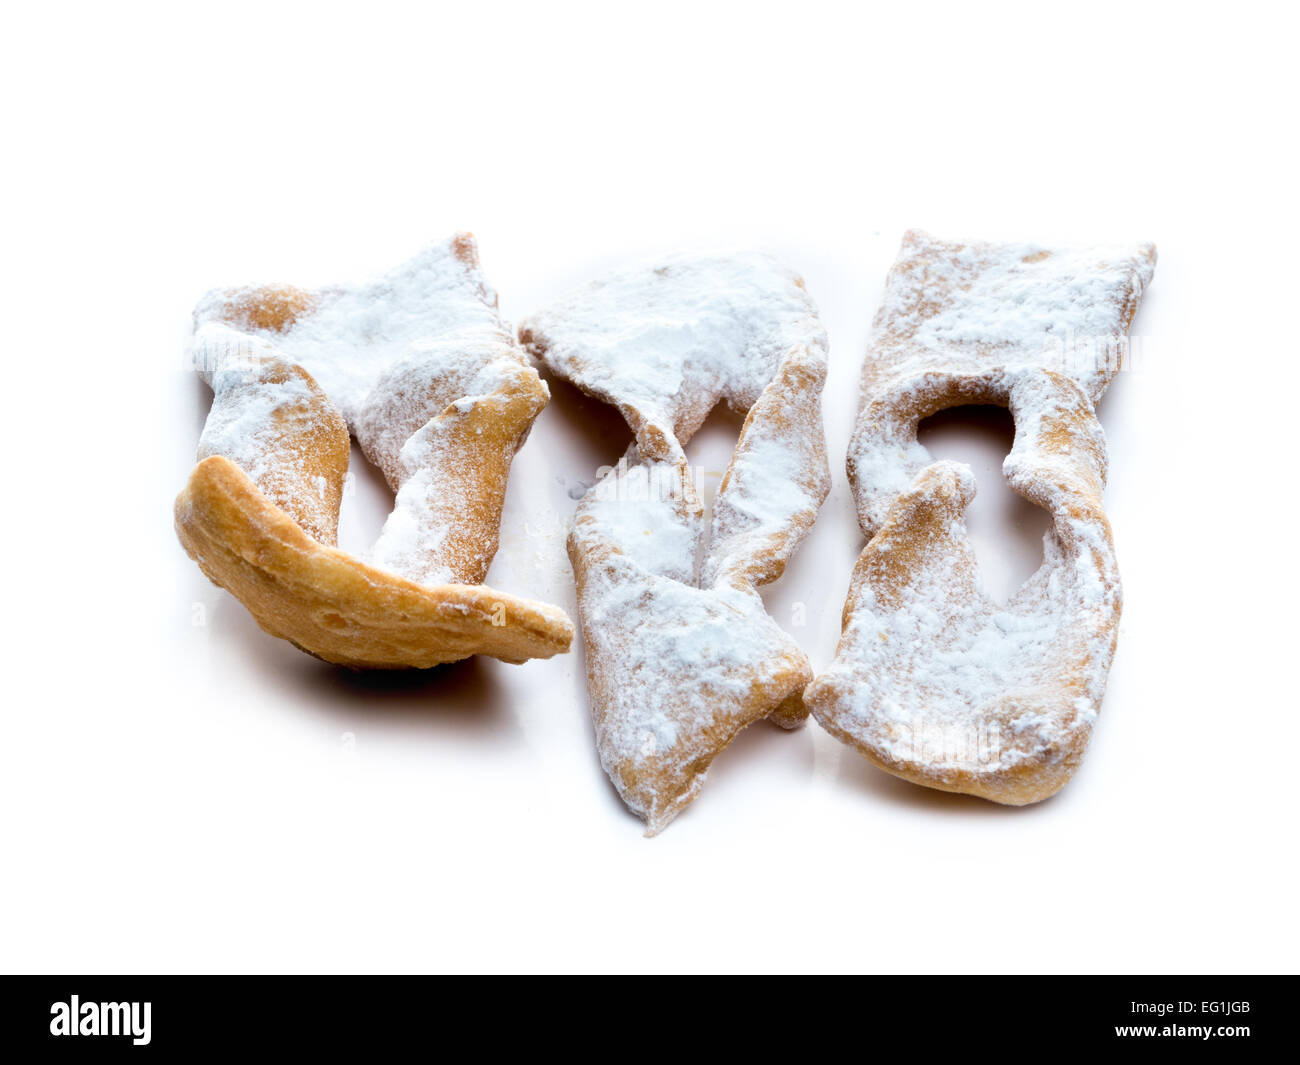 Tradizionale dolce polacco biscotti croccanti chiamato Faworki con lo zucchero semolato su sfondo bianco Foto Stock